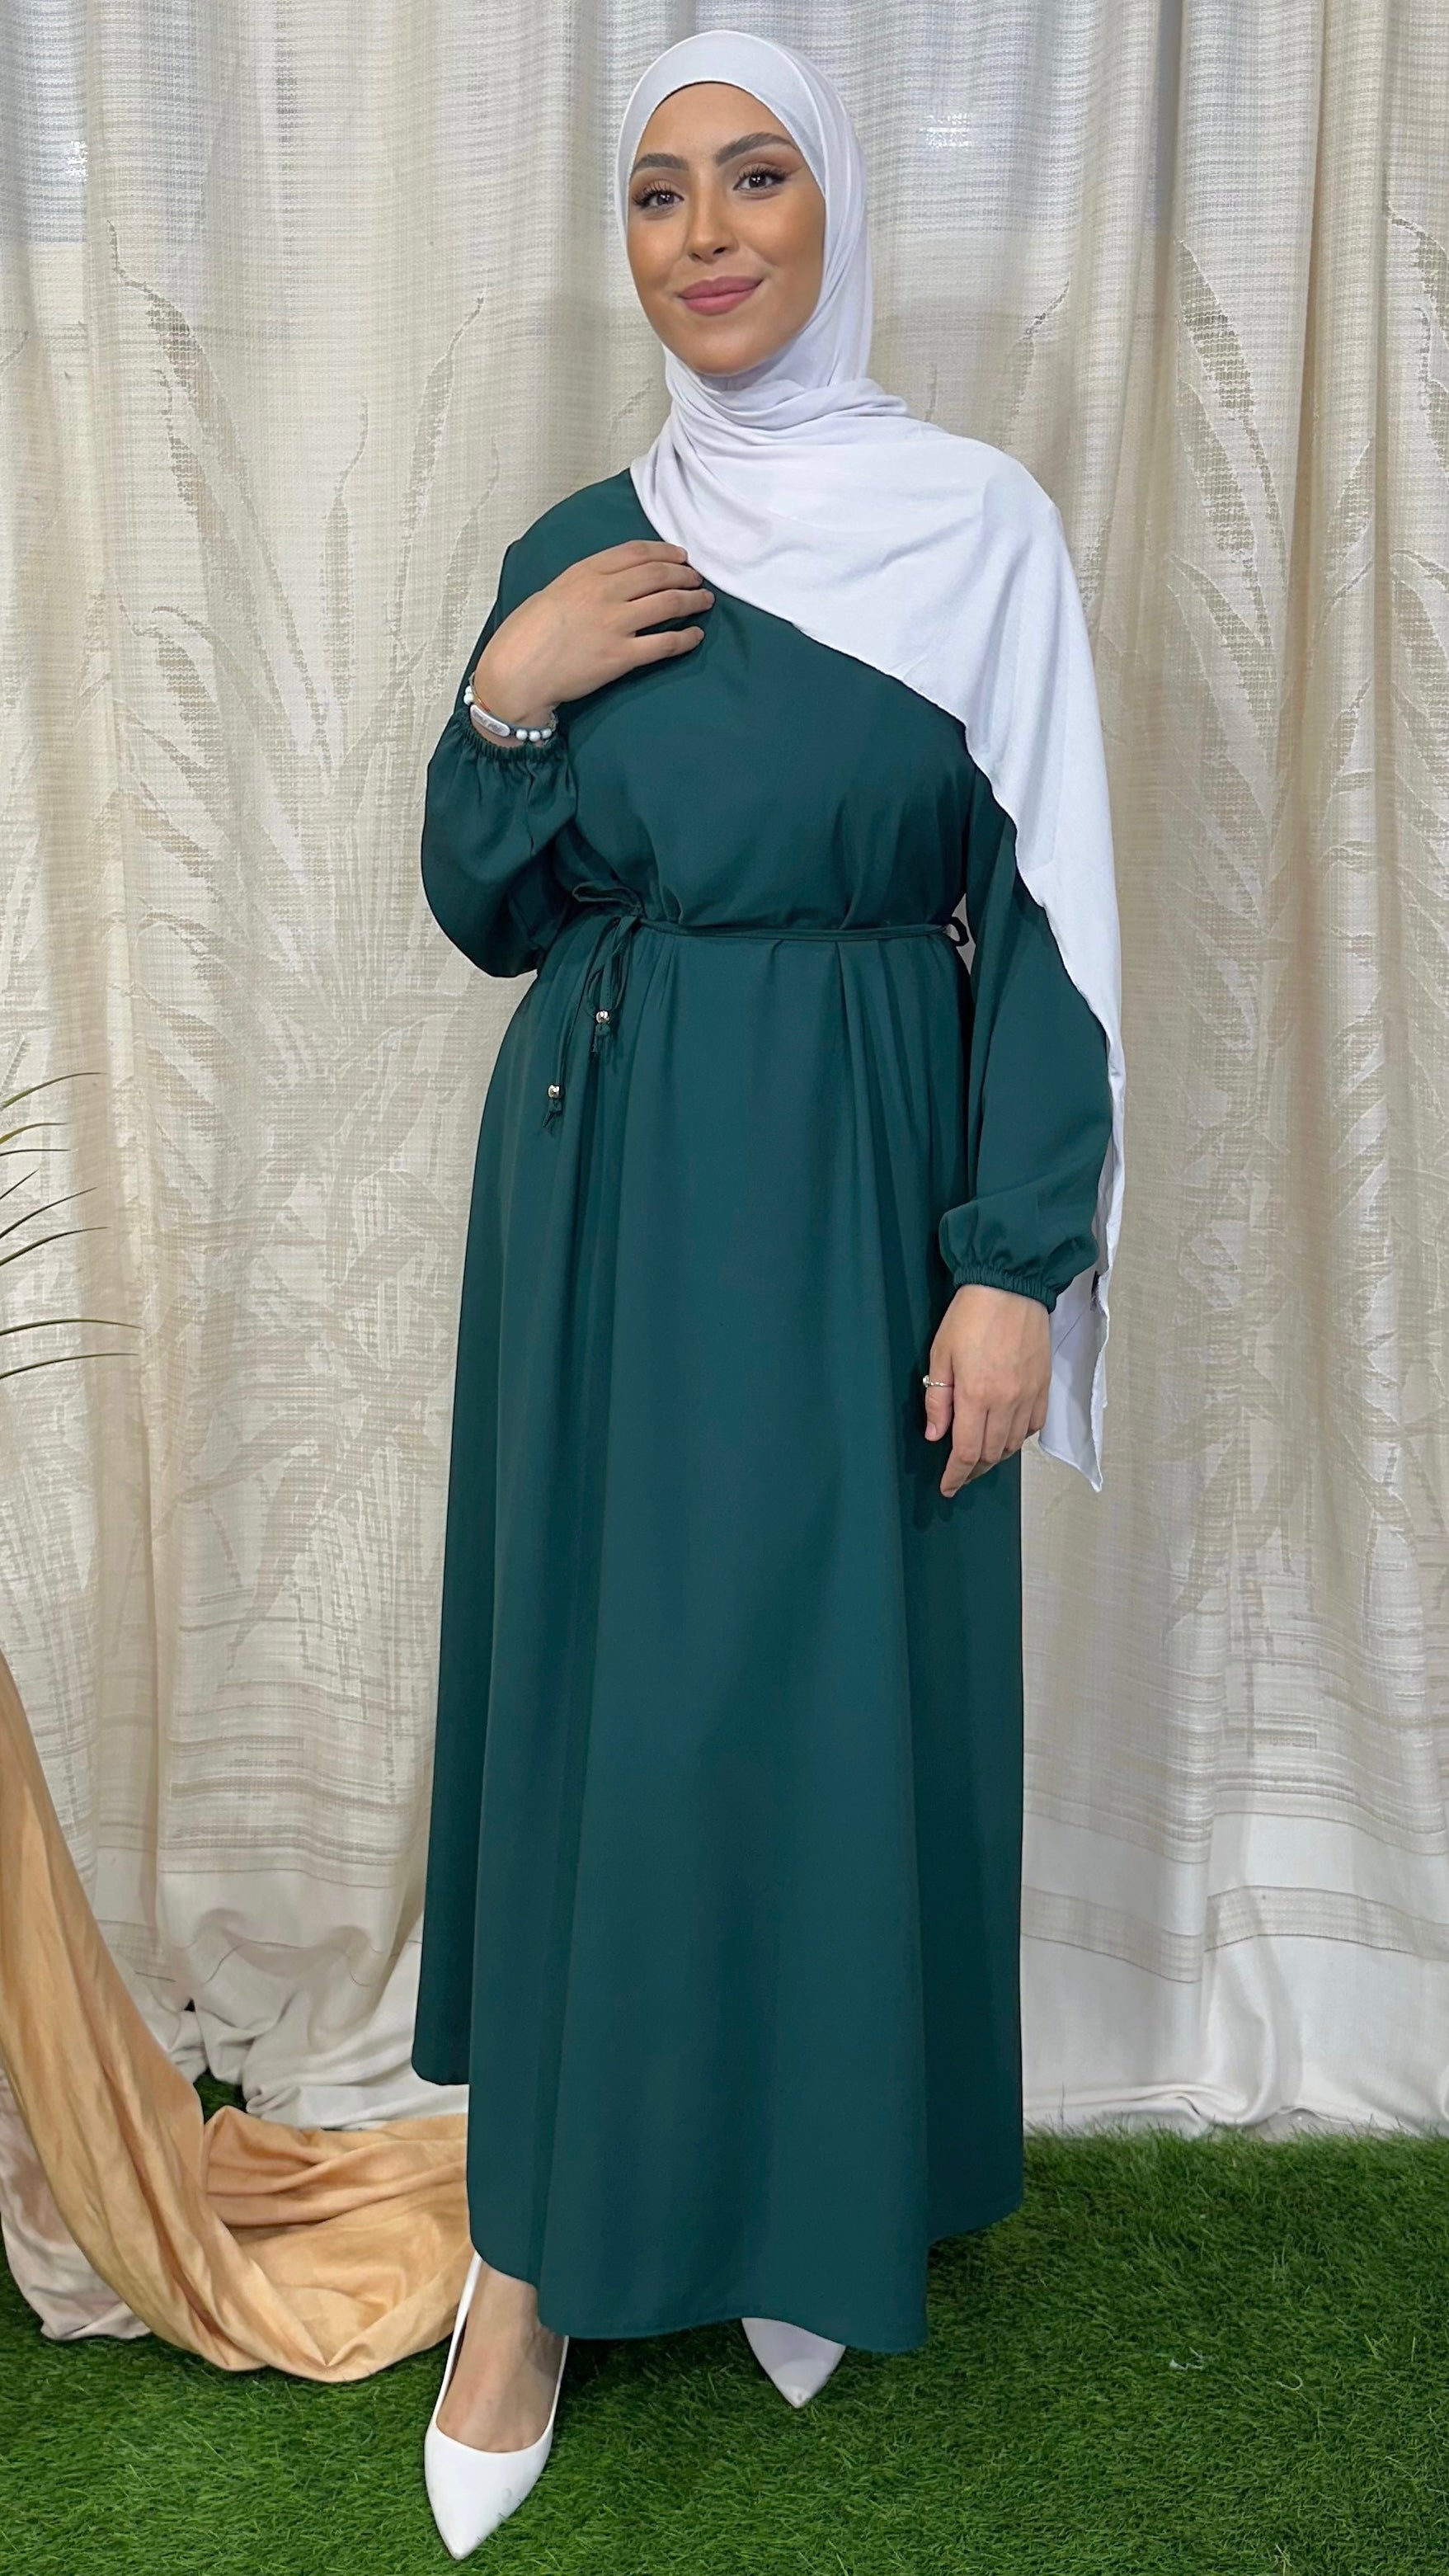 Vestito, abaya, semplice, colore unico, cintutino in vita, polsi arricciati, donna islamica, modest dress , Hijab Paradise, verde acqua scuro, bianco hijab